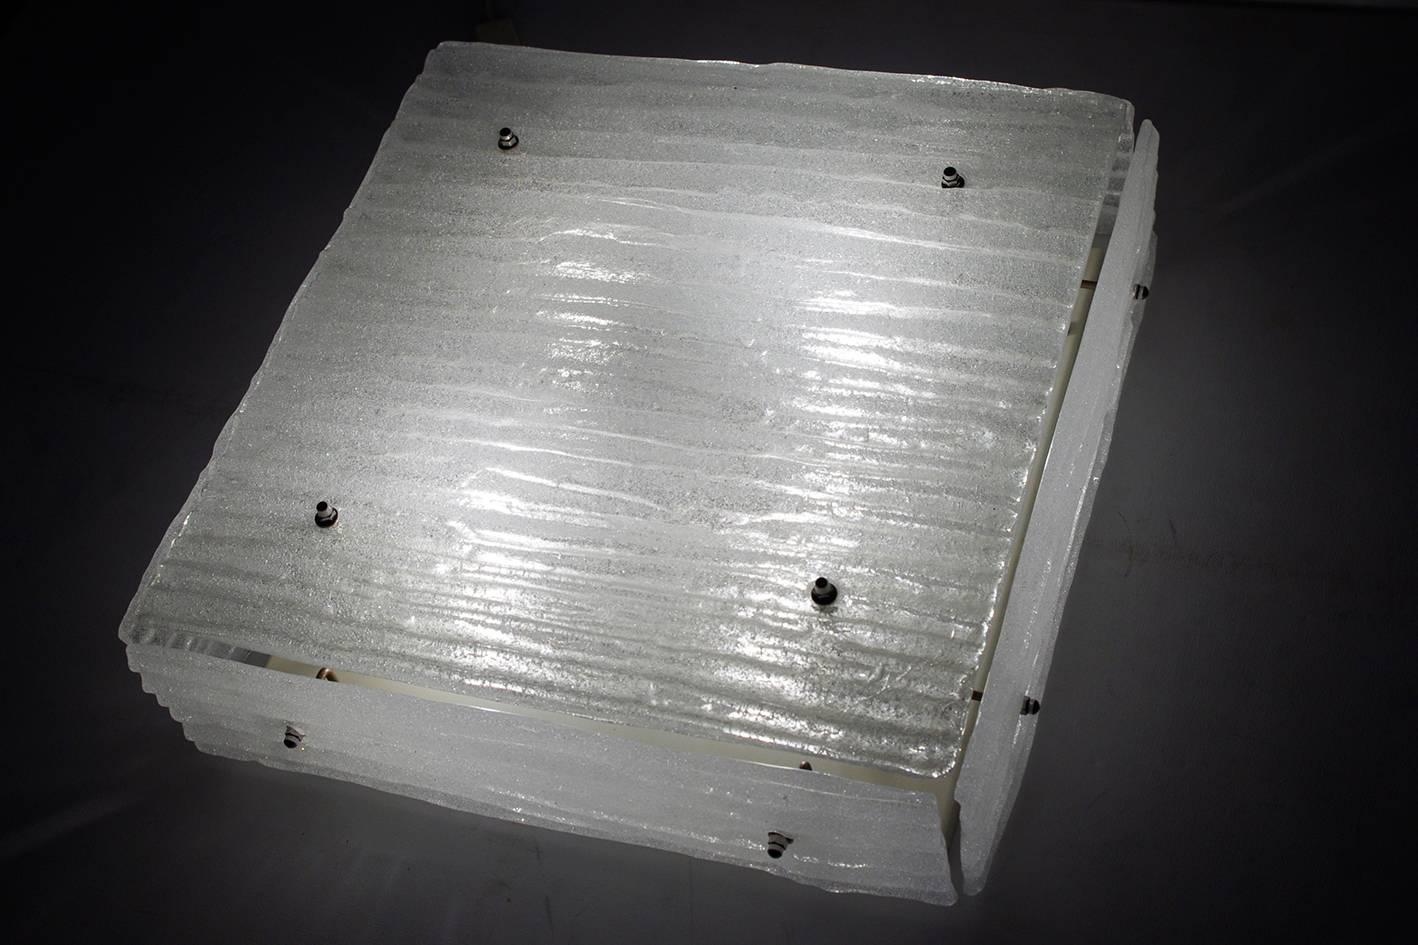 Seltene quadratische strukturierte weiße (nicht klar) Muranoglashalterung von J.T. Kalmar.
Österreich, 1960er Jahre. 

Lampenfassungen: Vier x E27 (US E26)